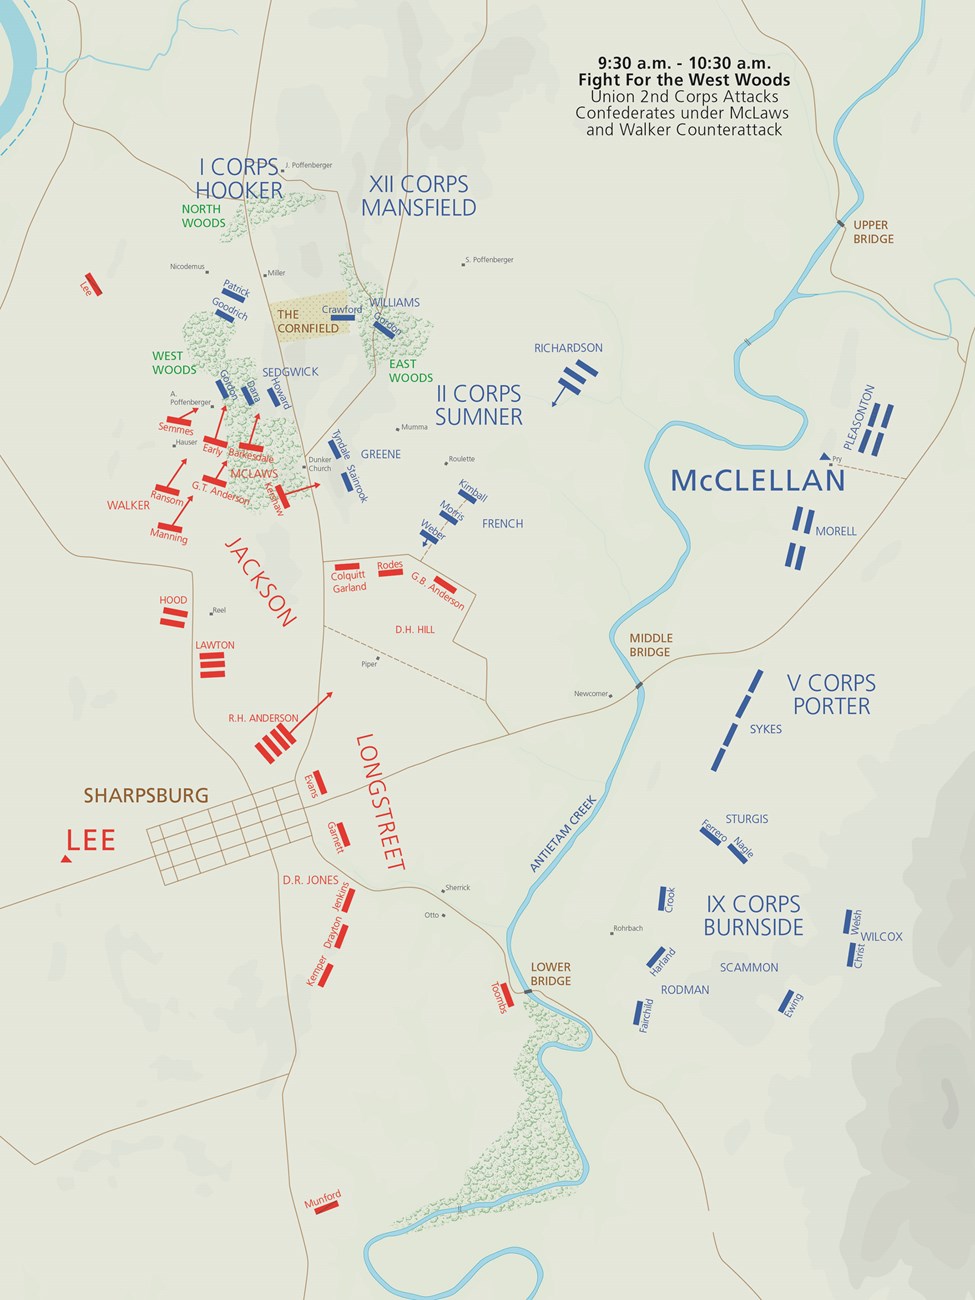 Antietam Battle Map 9:30-10:30 am